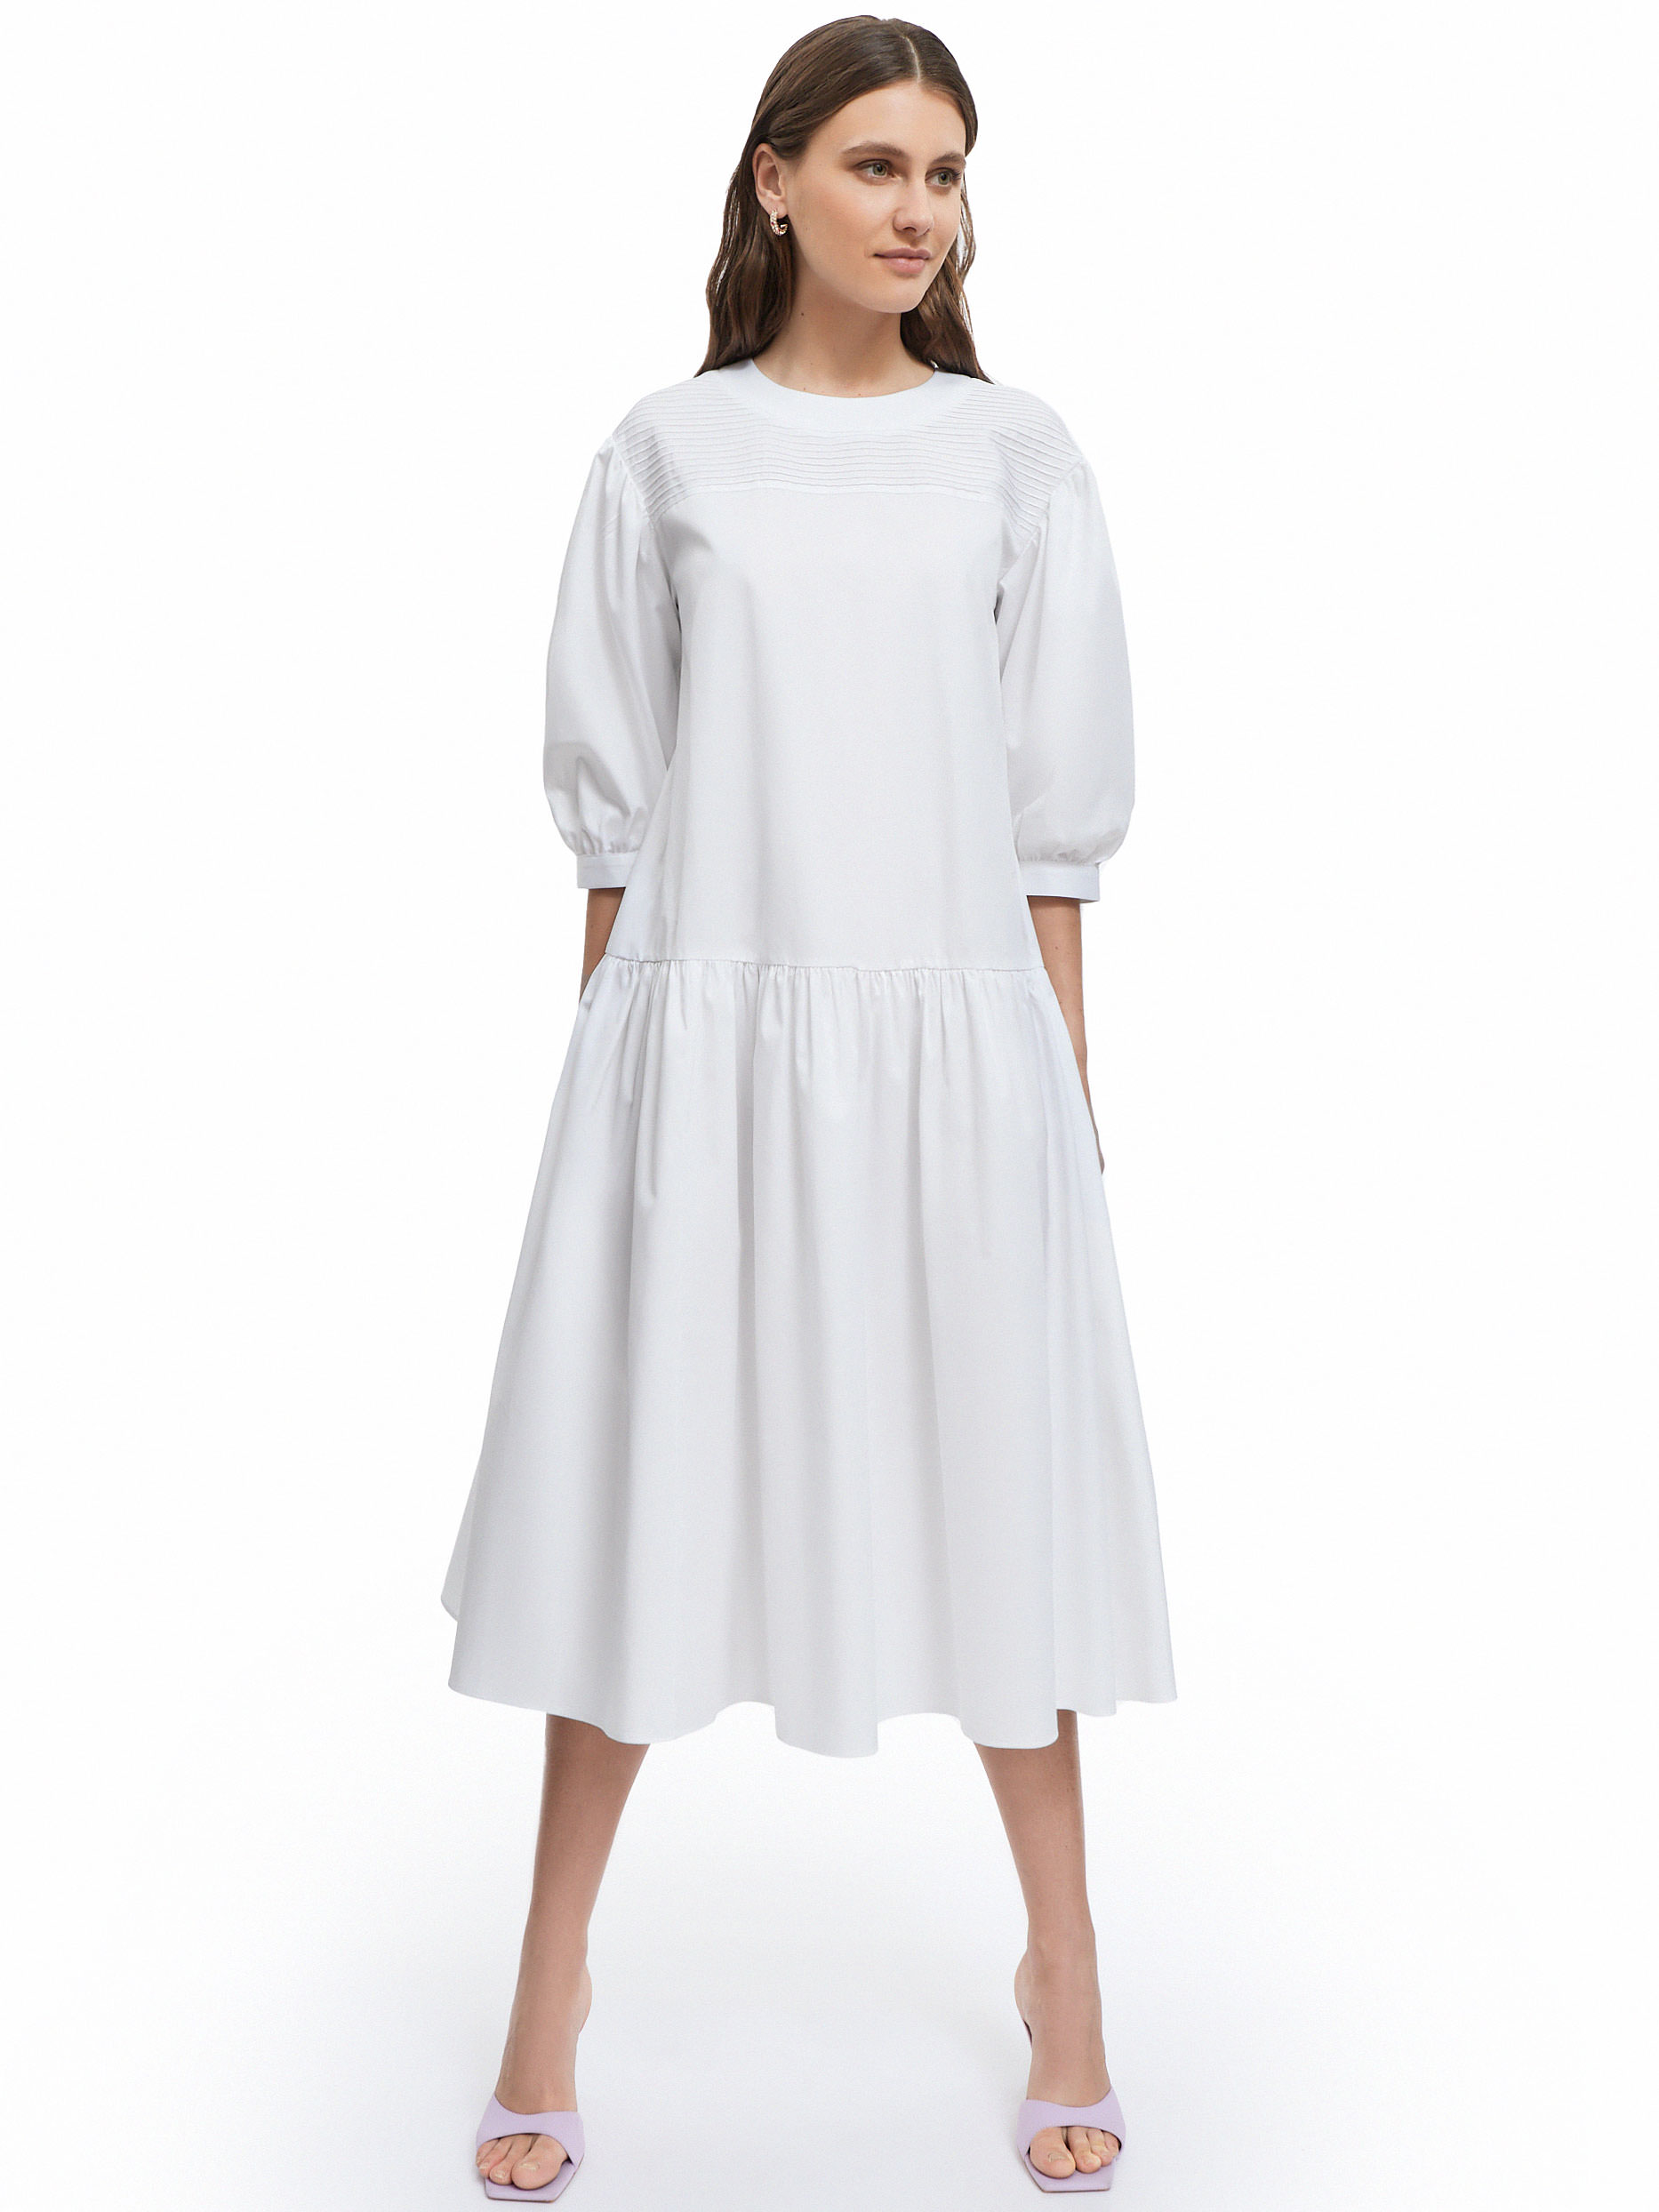 Платье женское с рукавами фонариками белое от byME 